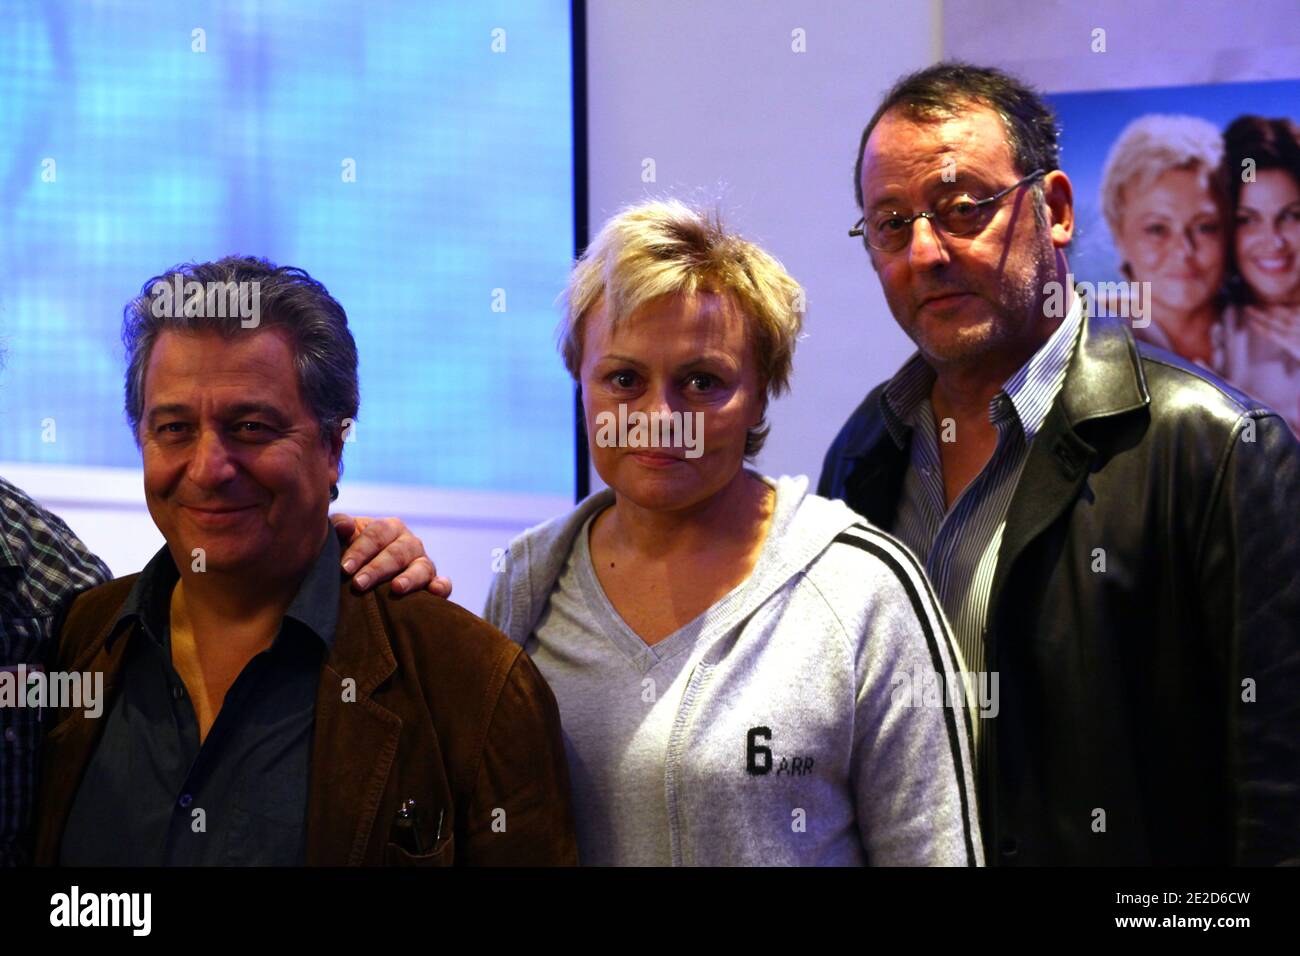 G-D) réalisateur/acteur français Christian clavier, actrice Muriel Robin et  acteur Jean Reno lors d'une conférence de presse avant la projection du  nouveau film 'on ne choisit pas sa famille', à Lille, dans